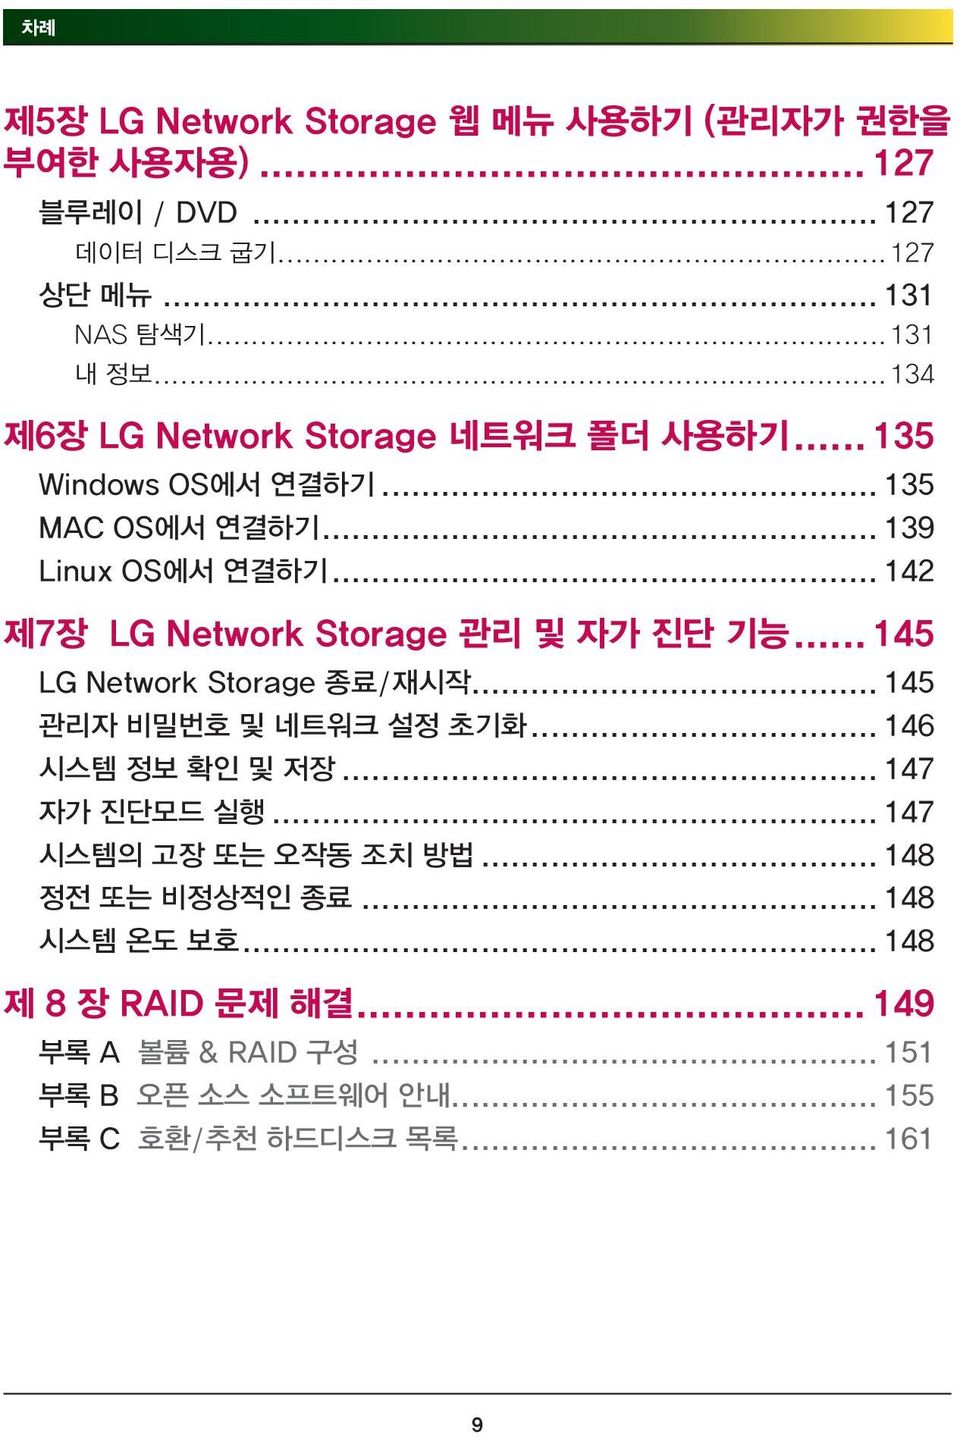 .. 142 제7장 LG Network Storage 관리 및 자가 진단 기능... 145 LG Network Storage 종료/재시작... 145 관리자 비밀번호 및 네트워크 설정 초기화... 146 시스템 정보 확인 및 저장.